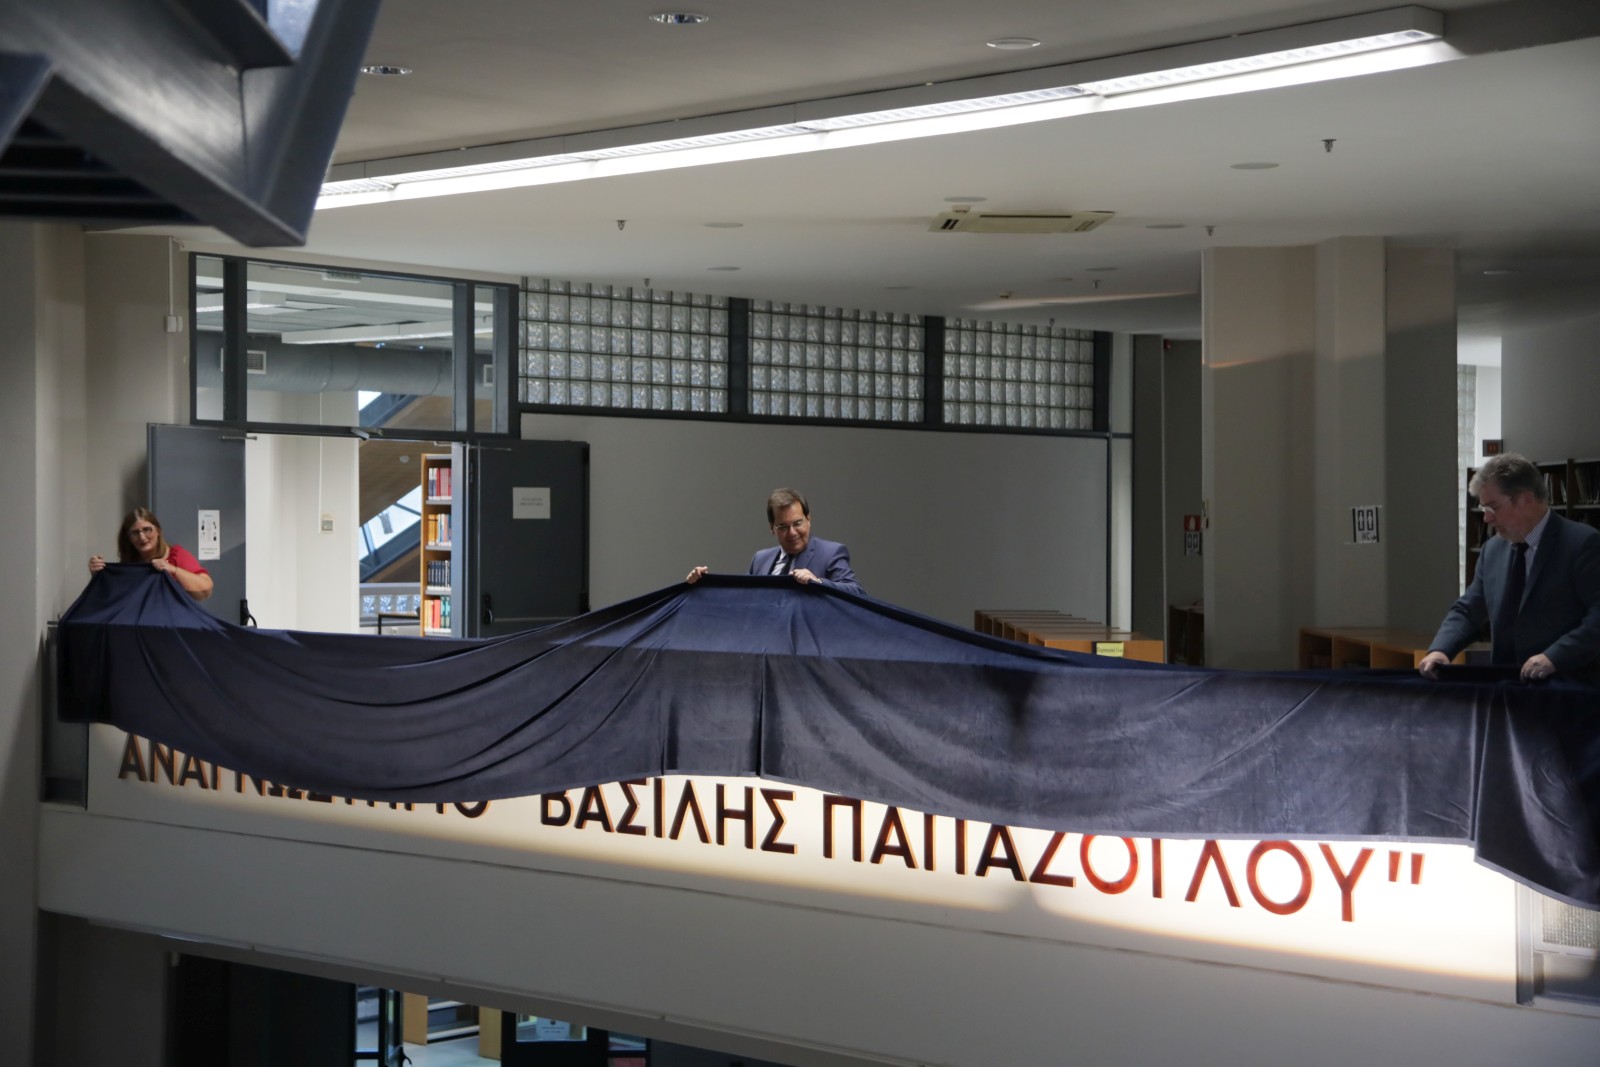  Το Κεντρικό Αναγνωστήριο της Βιβλιοθήκης του ΕΜΠ παίρνει το όνομα του αείμνηστου Καθηγητή Β. Παπάζογλου